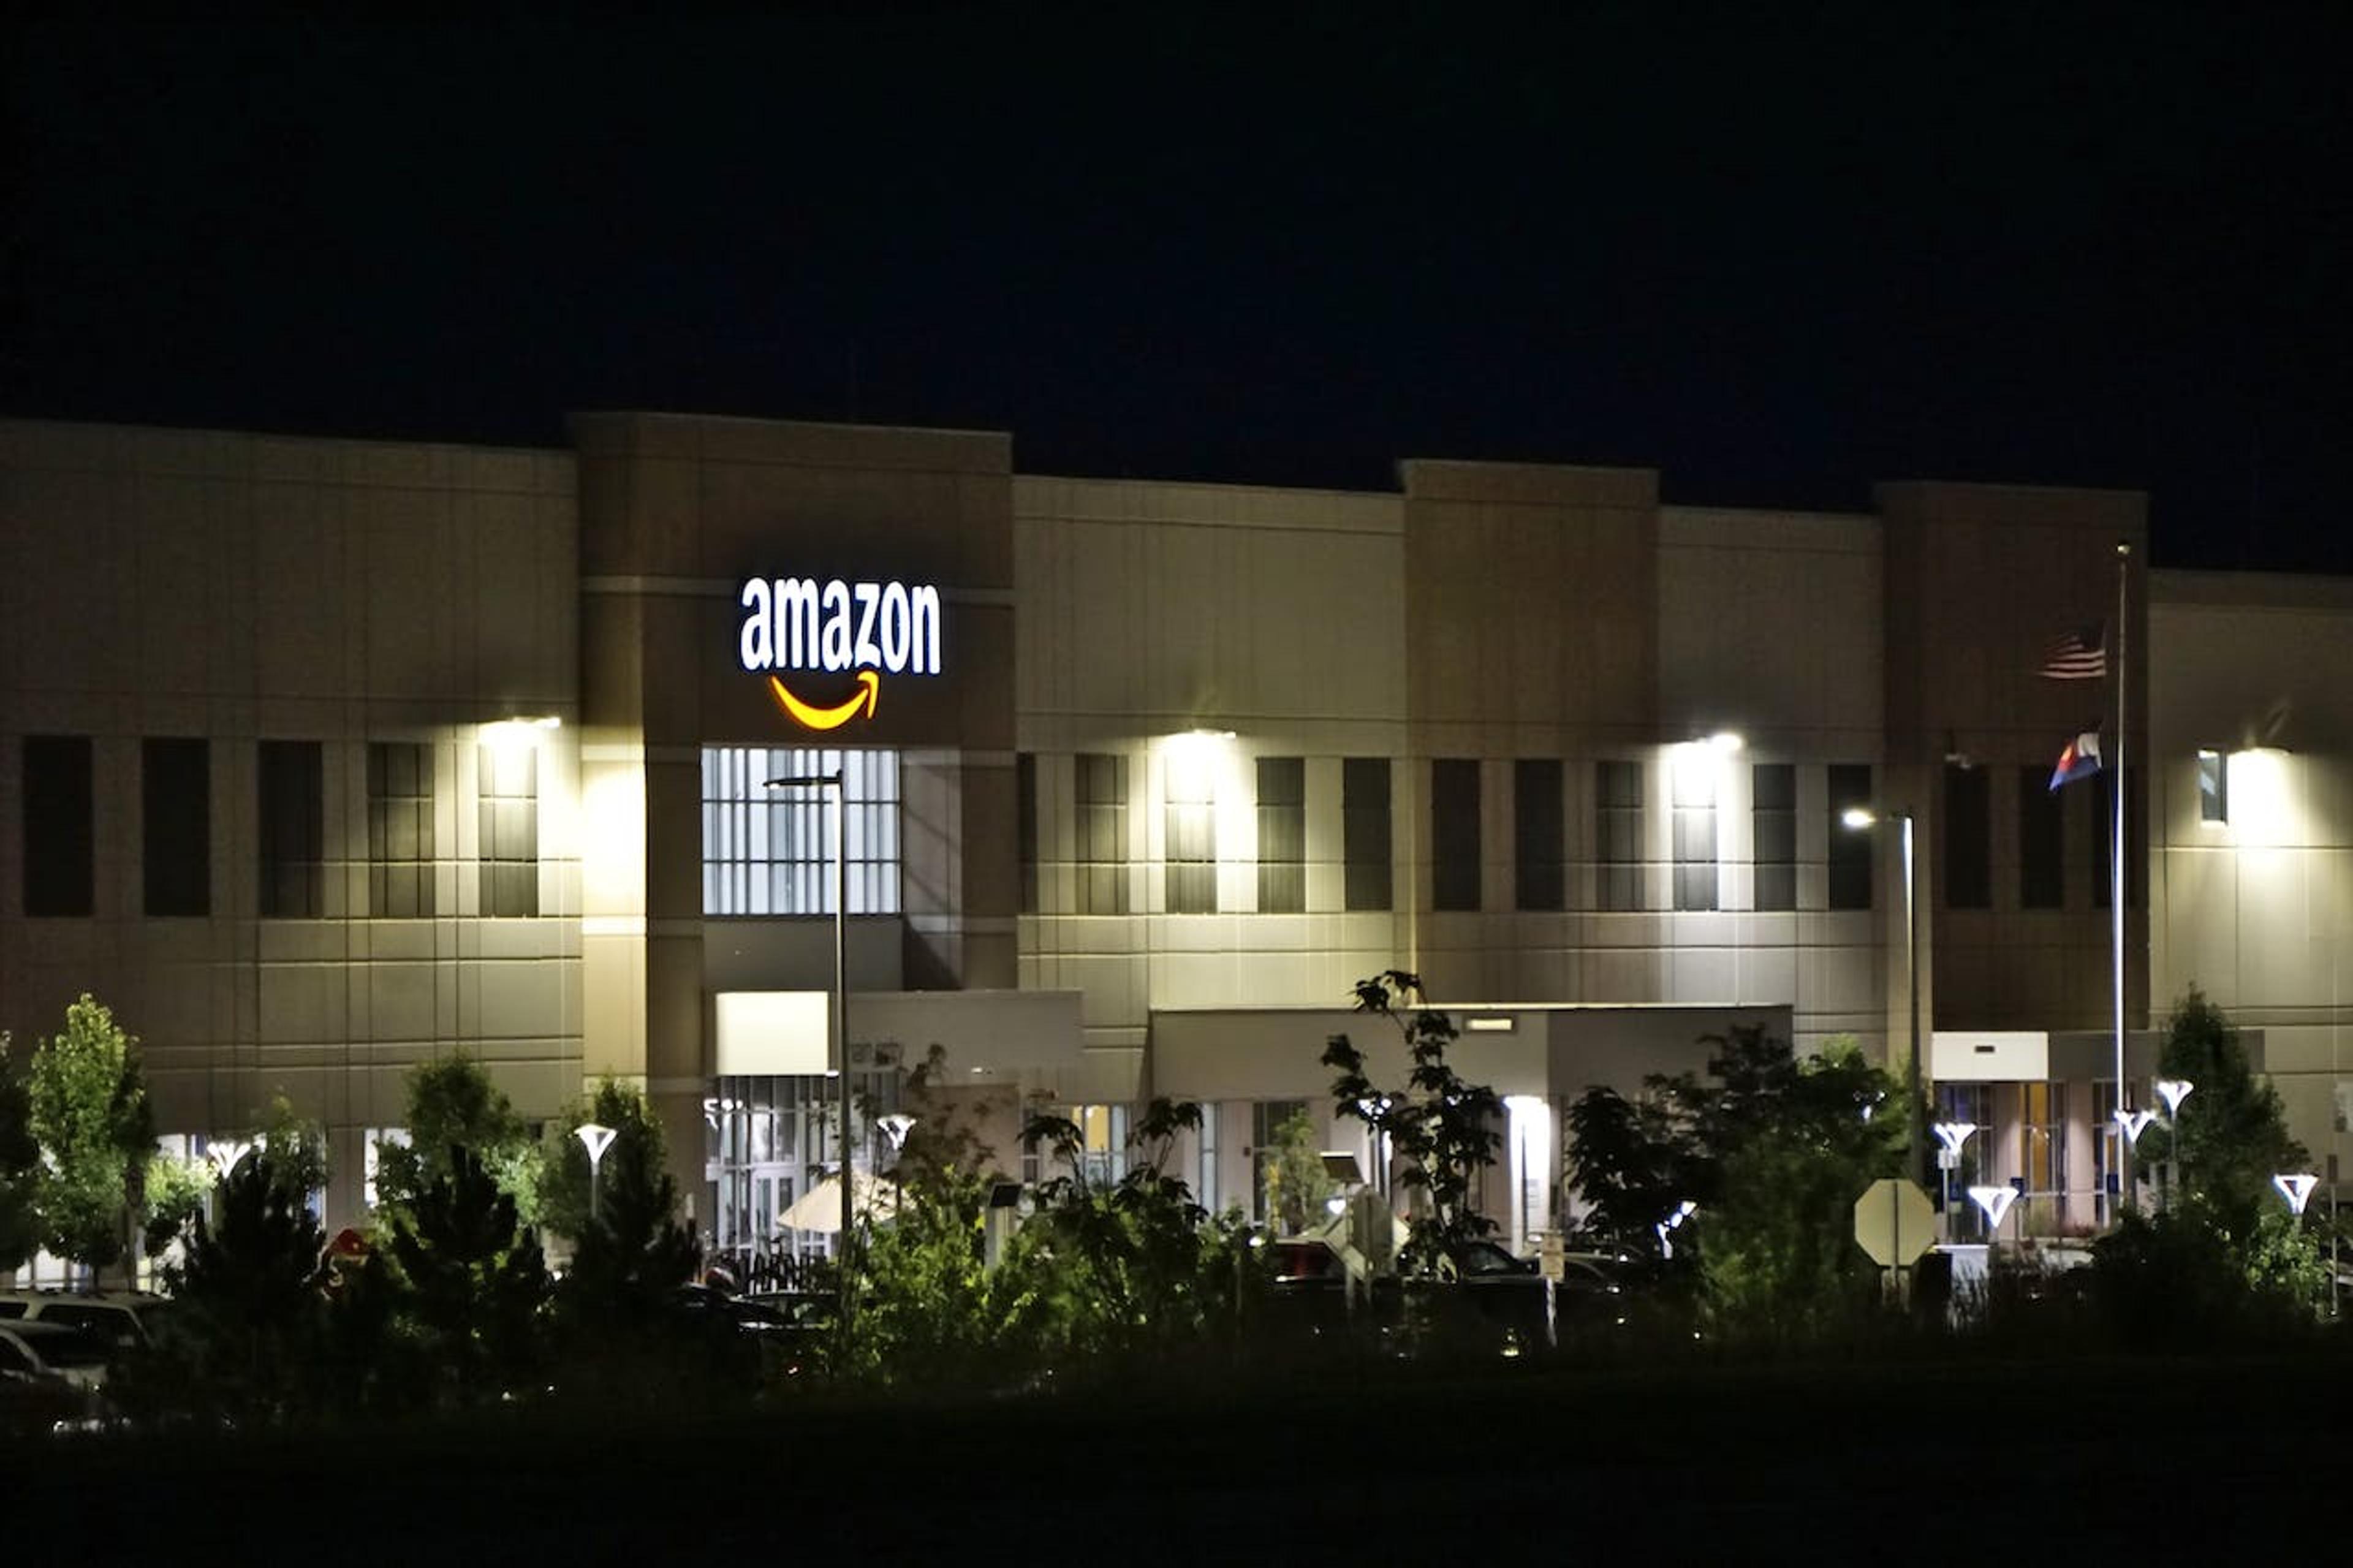 An image of the facade on an Amazon FBA warehouse.